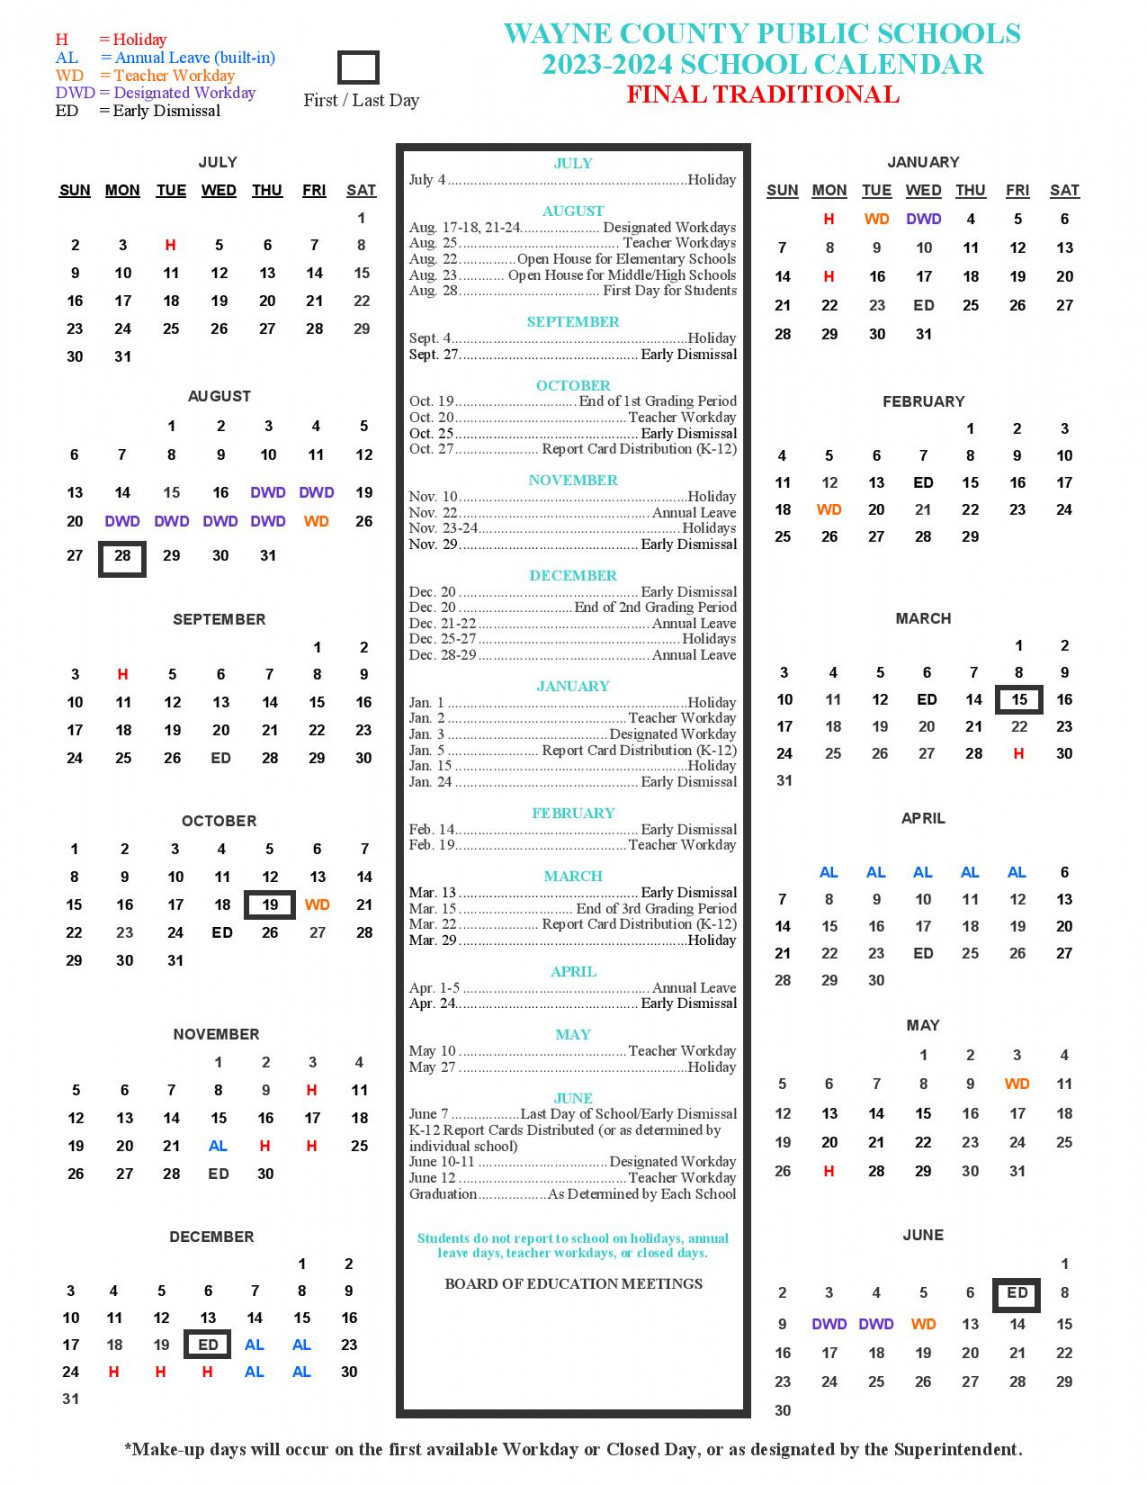 Wayne County Public Schools Calendar - in PDF